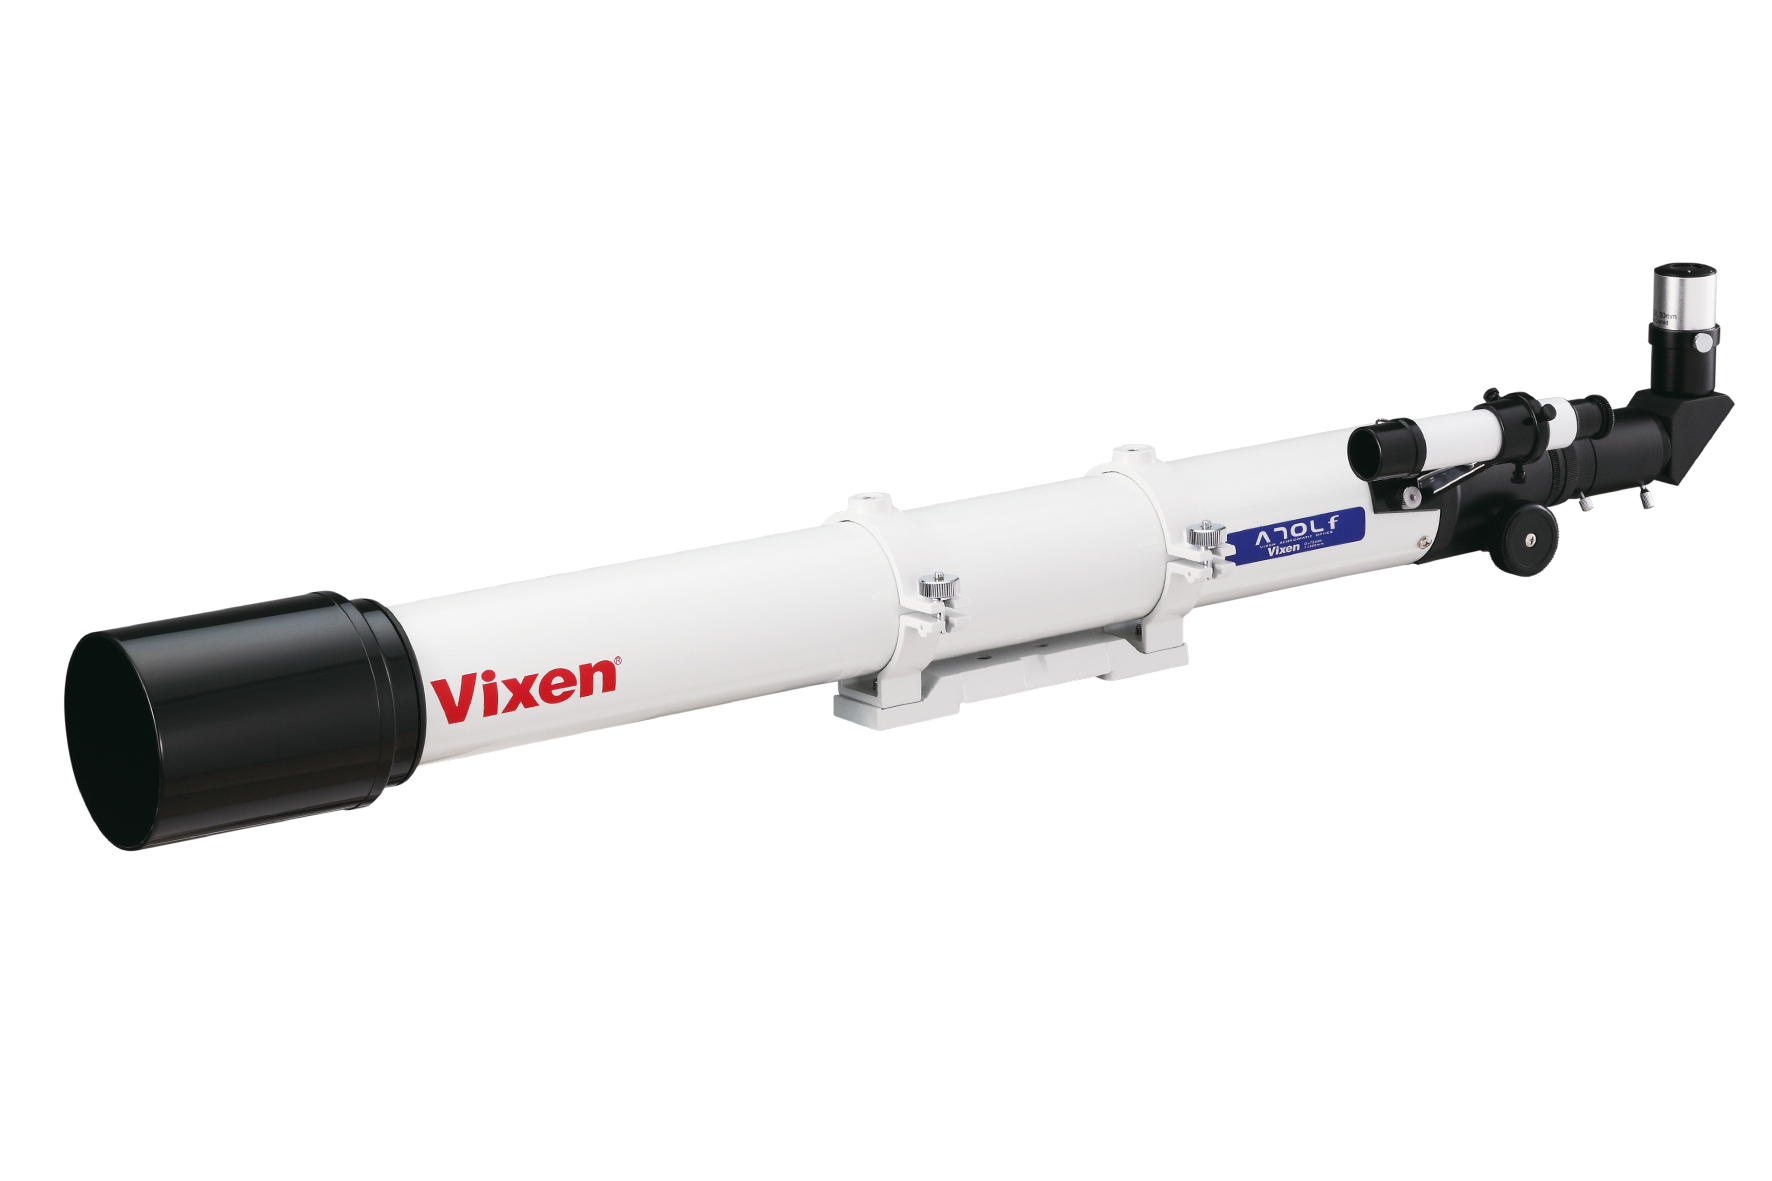 Réfracteur achromatique Vixen A70Lf - Tube optique